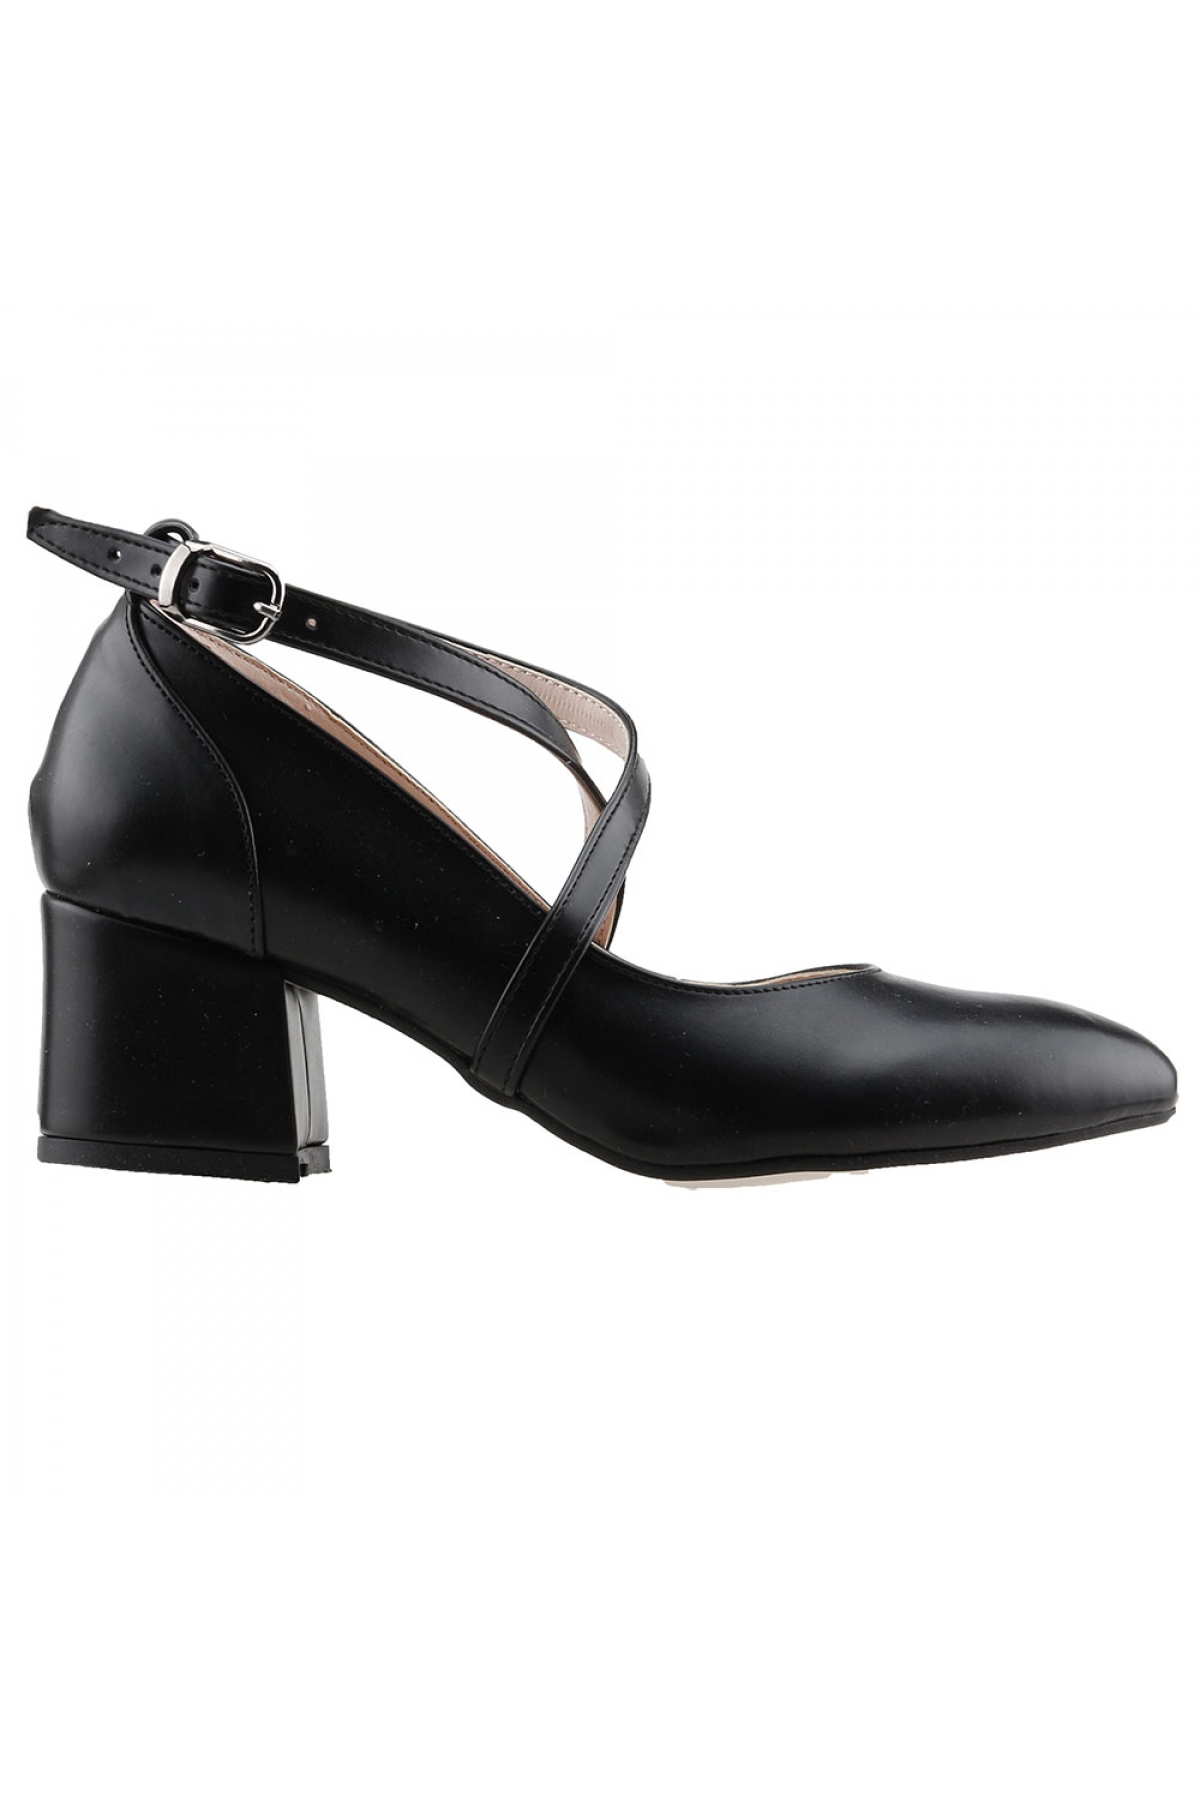 Flo 544-1121 Cilt 5 Cm Topuk Bayan Sandalet Ayakkabı Siyah. 1